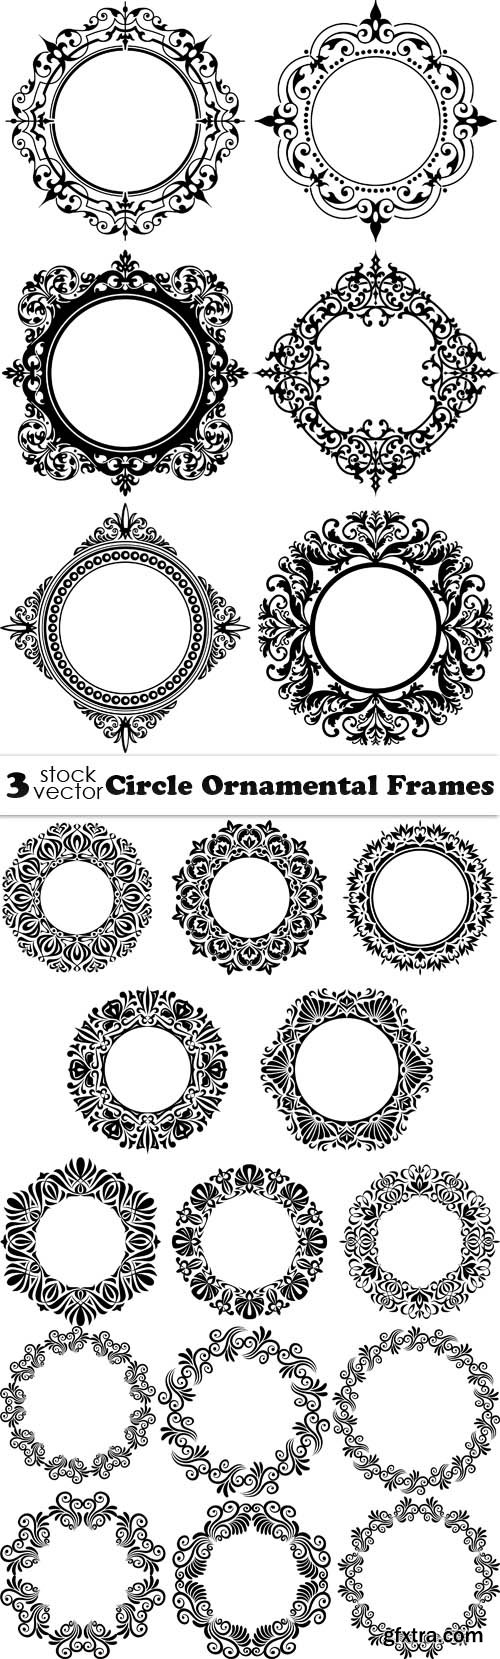 Vectors - Circle Ornamental Frames